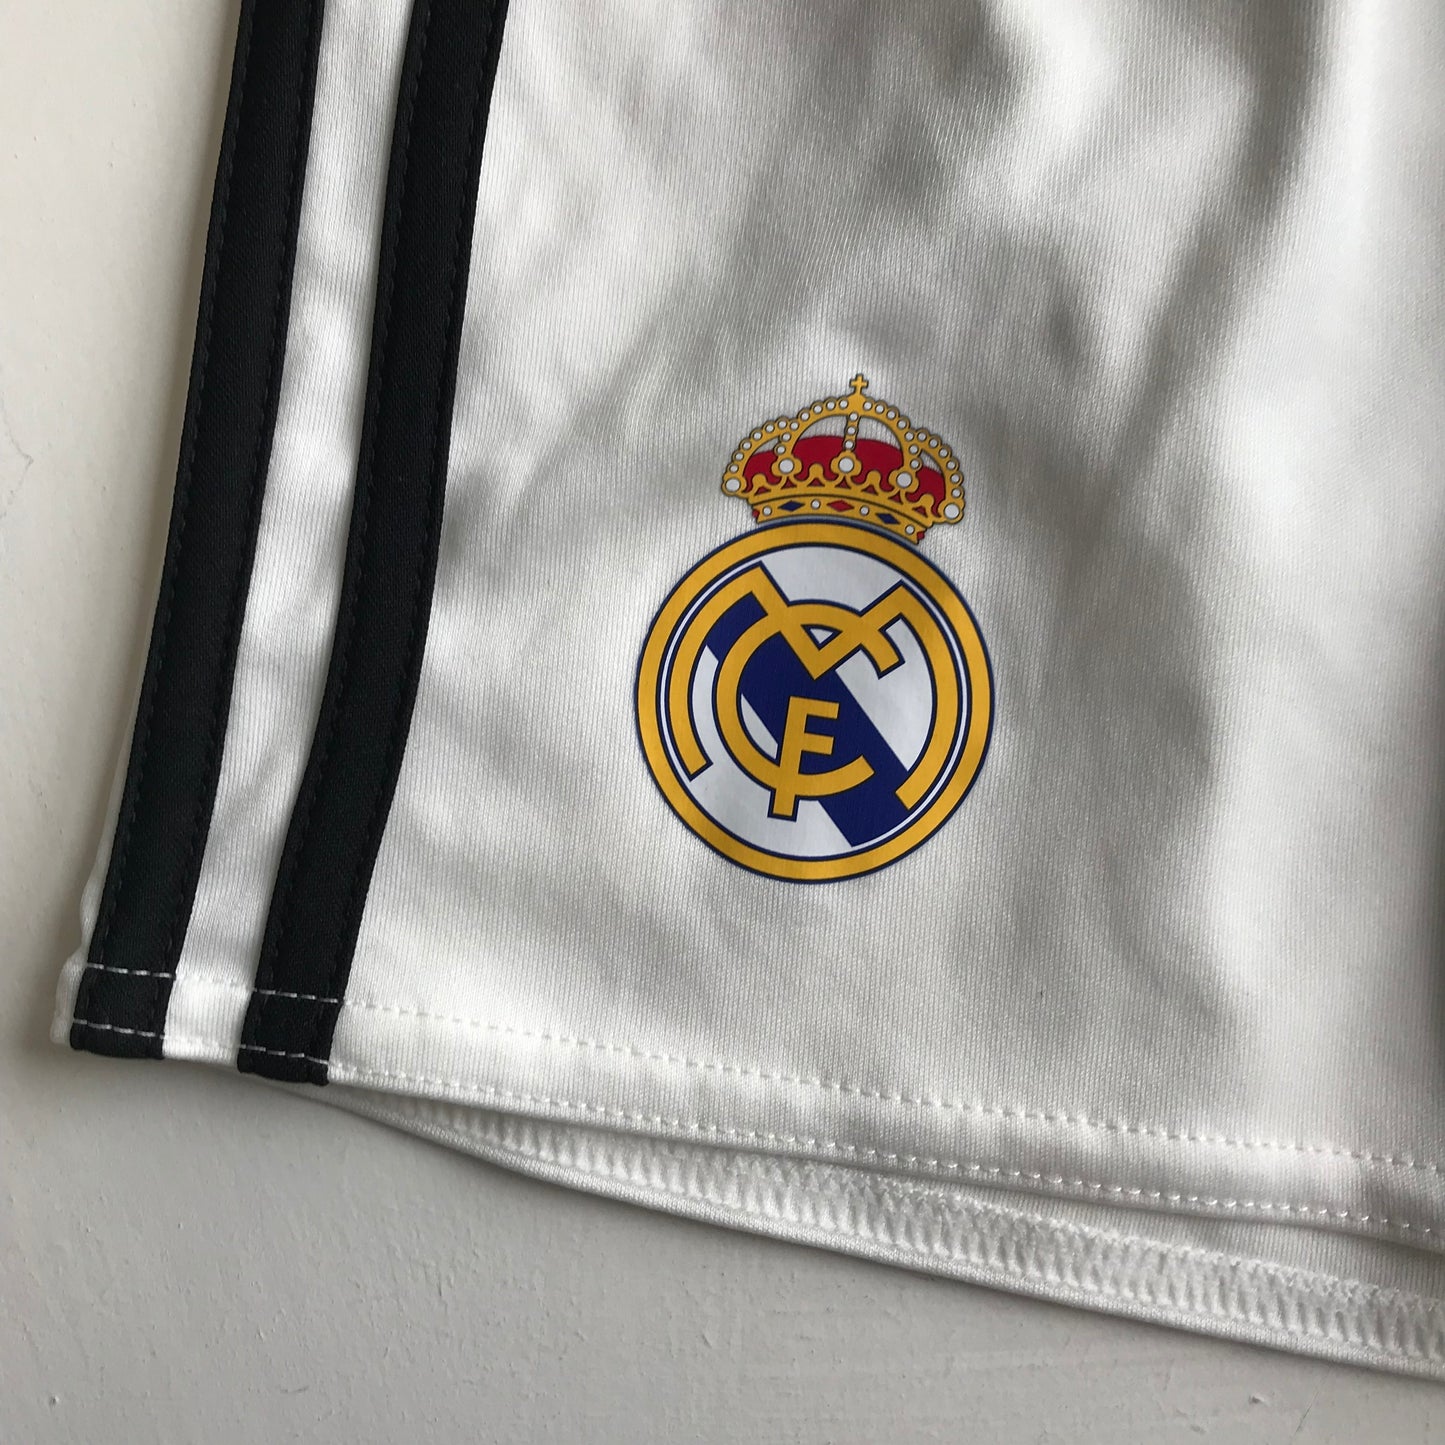 Football Shorts - Real Madrid Adidas - Age 4